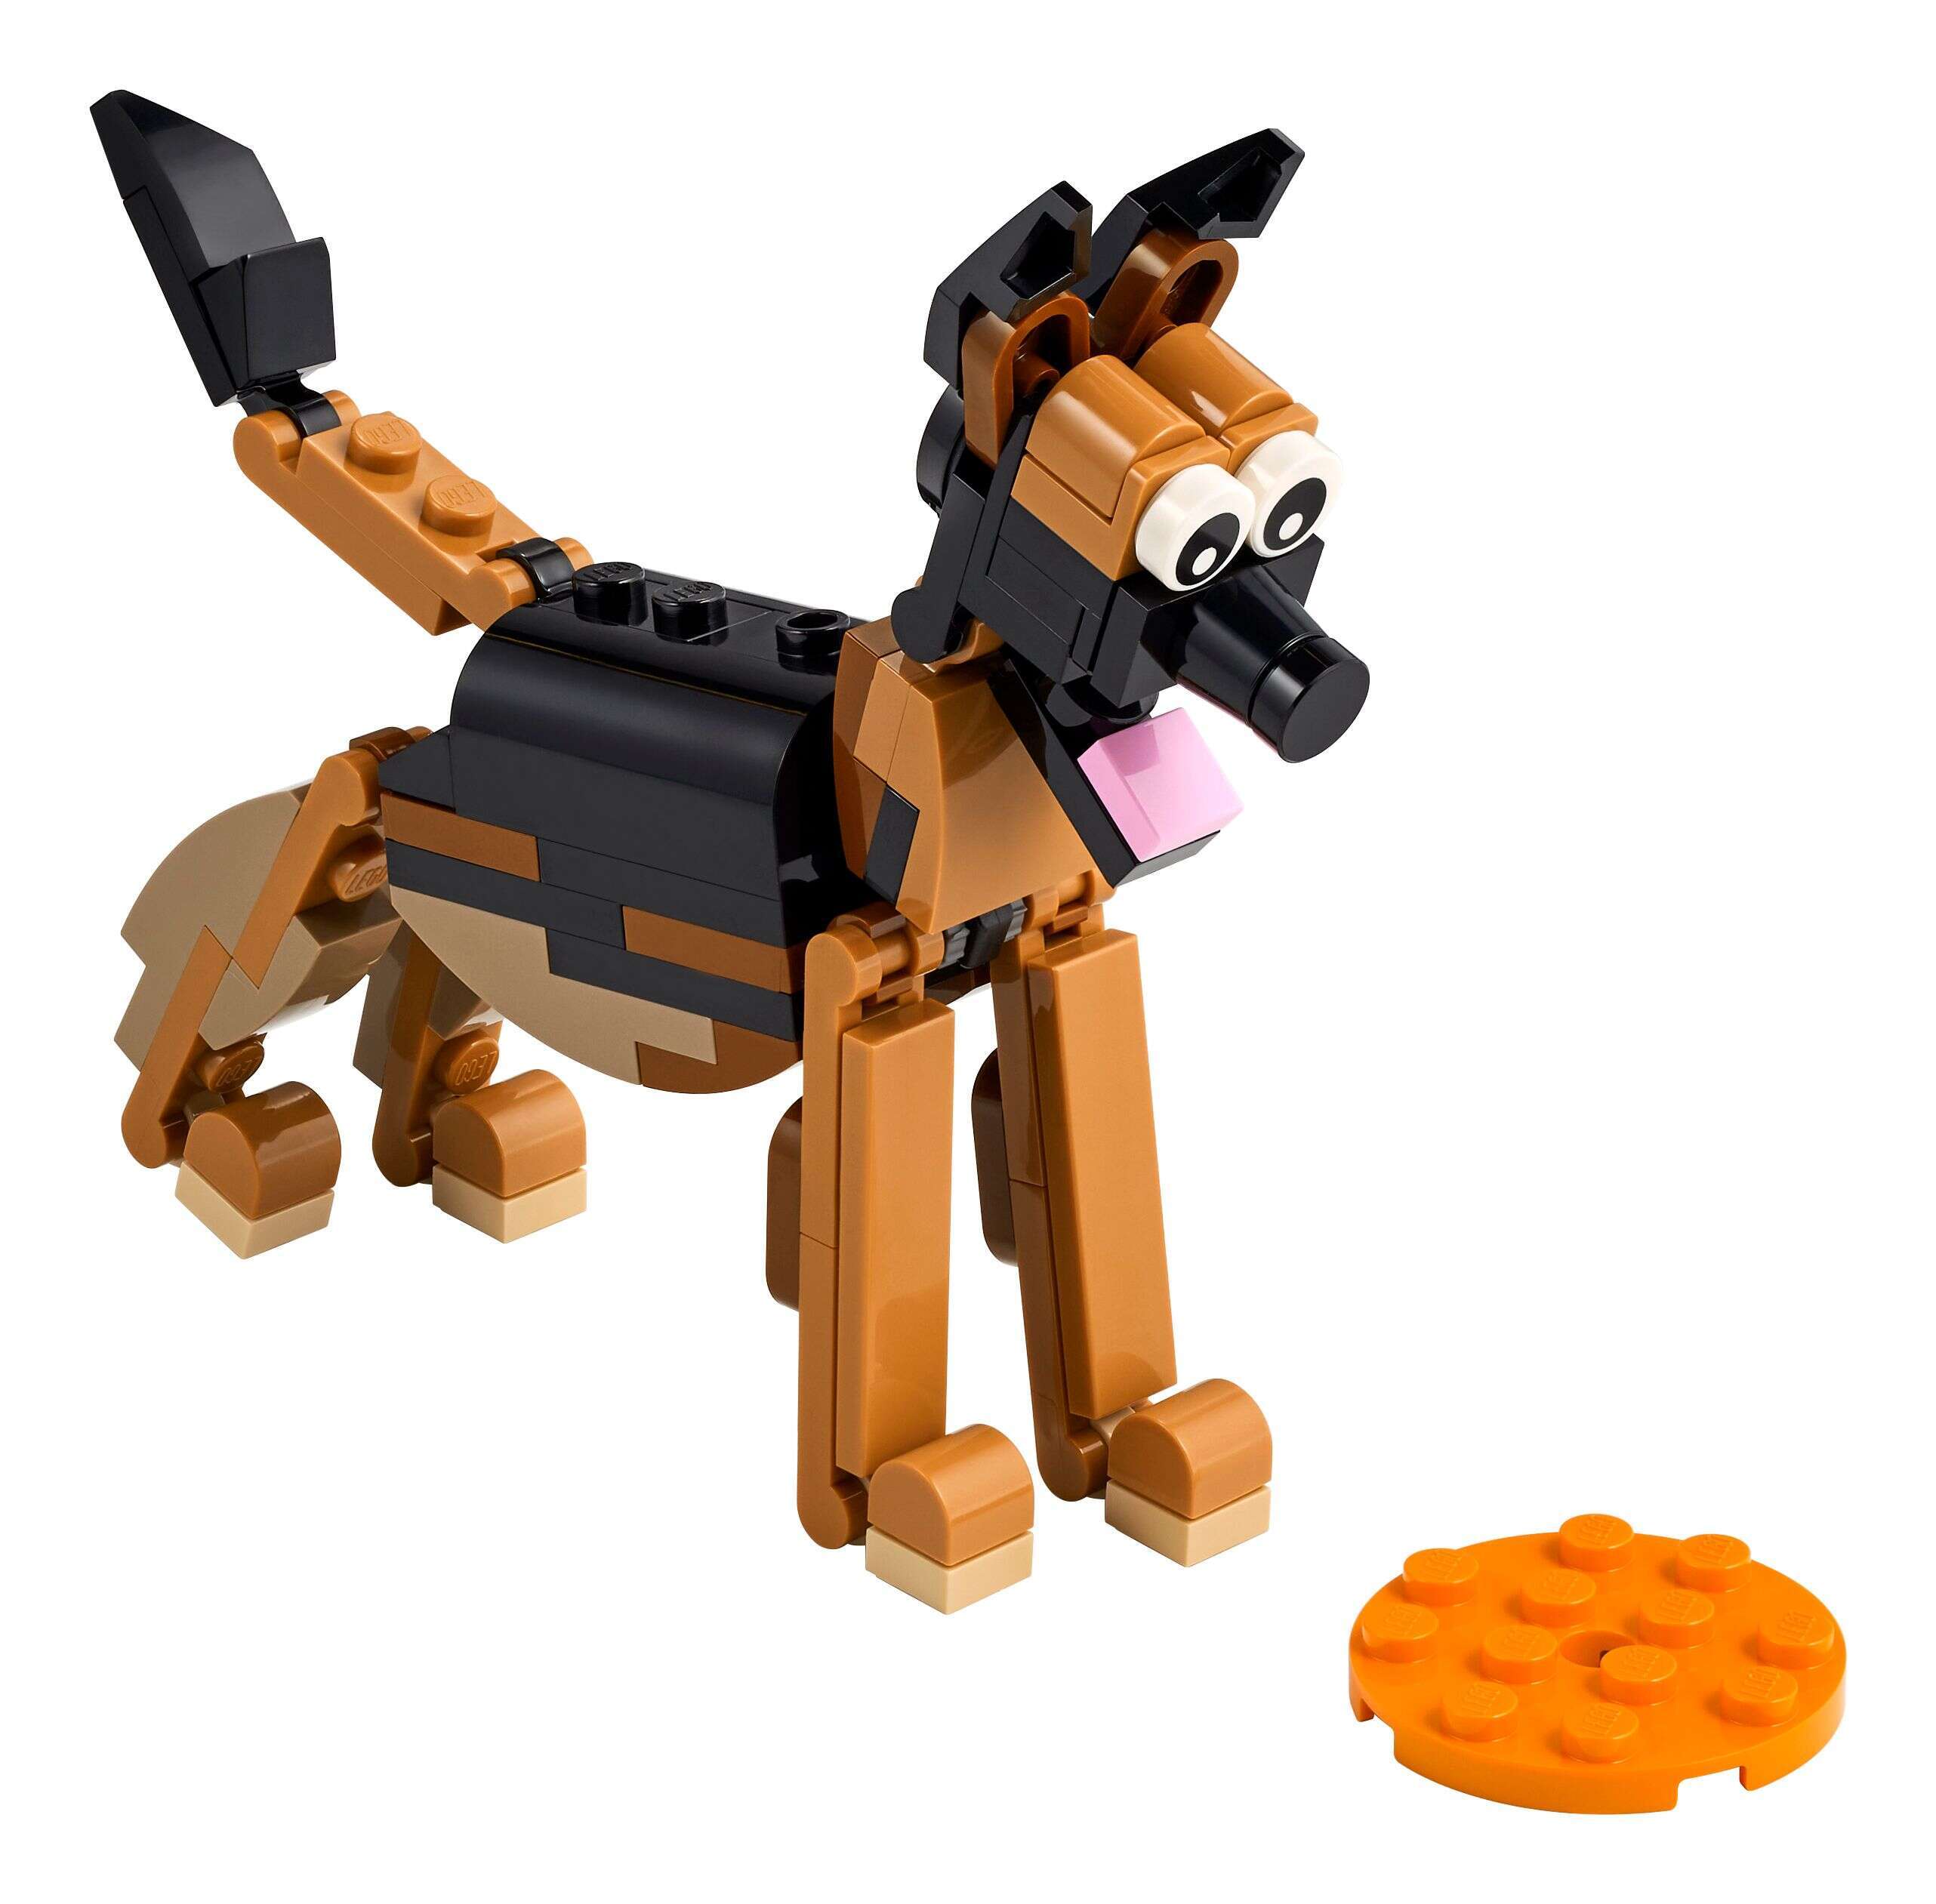 LEGO 30578 Creator 3-in-1 Deutscher Schäferhund, Kobra oder Spinne